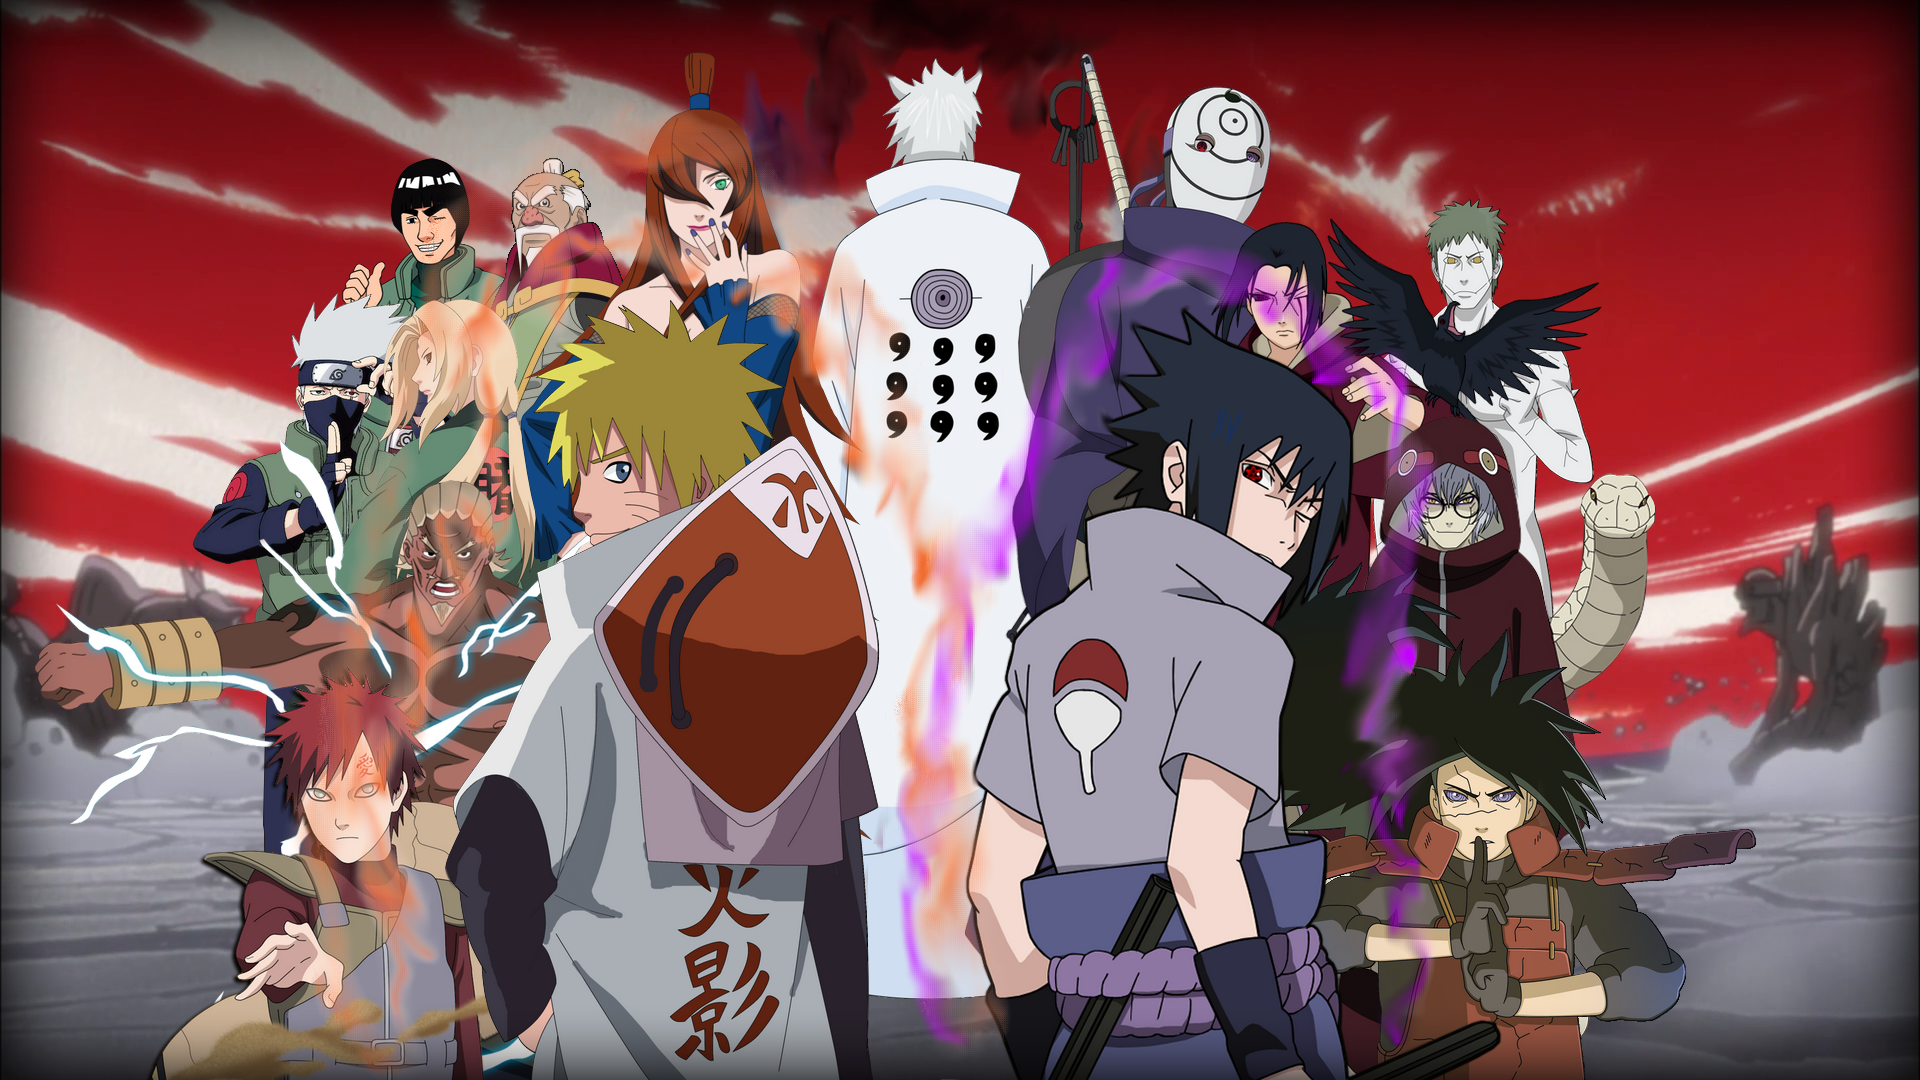 Bảng đánh giá sức mạnh các nhân vật Naruto sẽ giúp bạn hiểu rõ hơn về khả năng và cách sử dụng ninjutsu của các nhân vật trong bộ truyện nổi tiếng này. Hãy cùng khám phá và so sánh sức mạnh của các nhân vật để đánh giá xem ai sẽ là người chiến thắng trong cuộc chiến ninja đầy kịch tính!